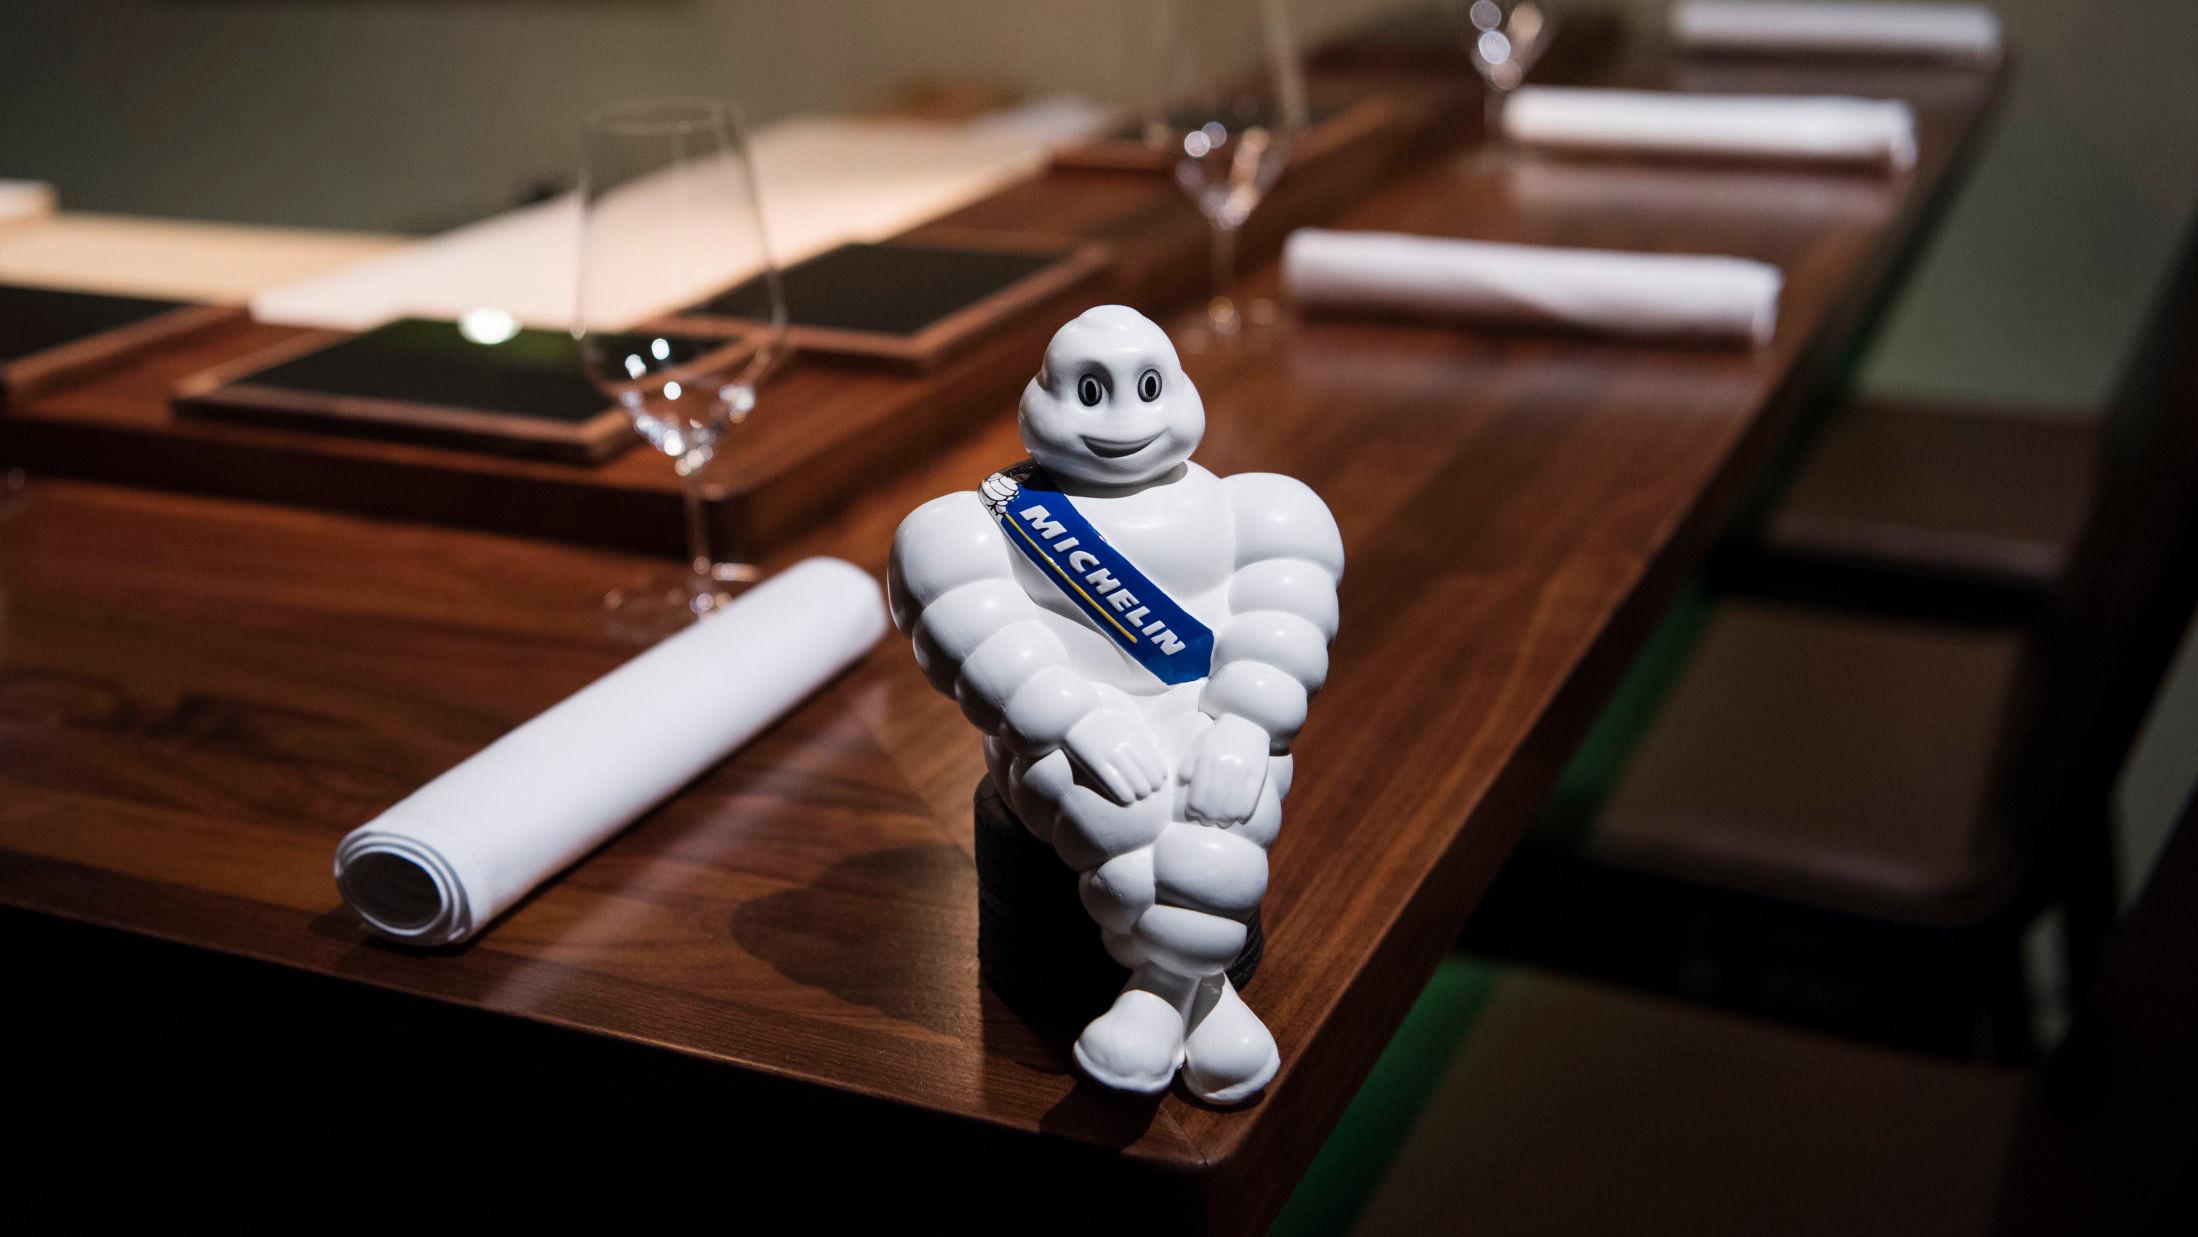 MYSTISK: Michelin har stor makt i restaurantbransjen, men hvem er egentlig inspektørene som setter stjernene? Her er Michelin-mannen hos sushi-restauranten Sabi Omakase i Stavanger. Foto: Marie Von Krogh/VG